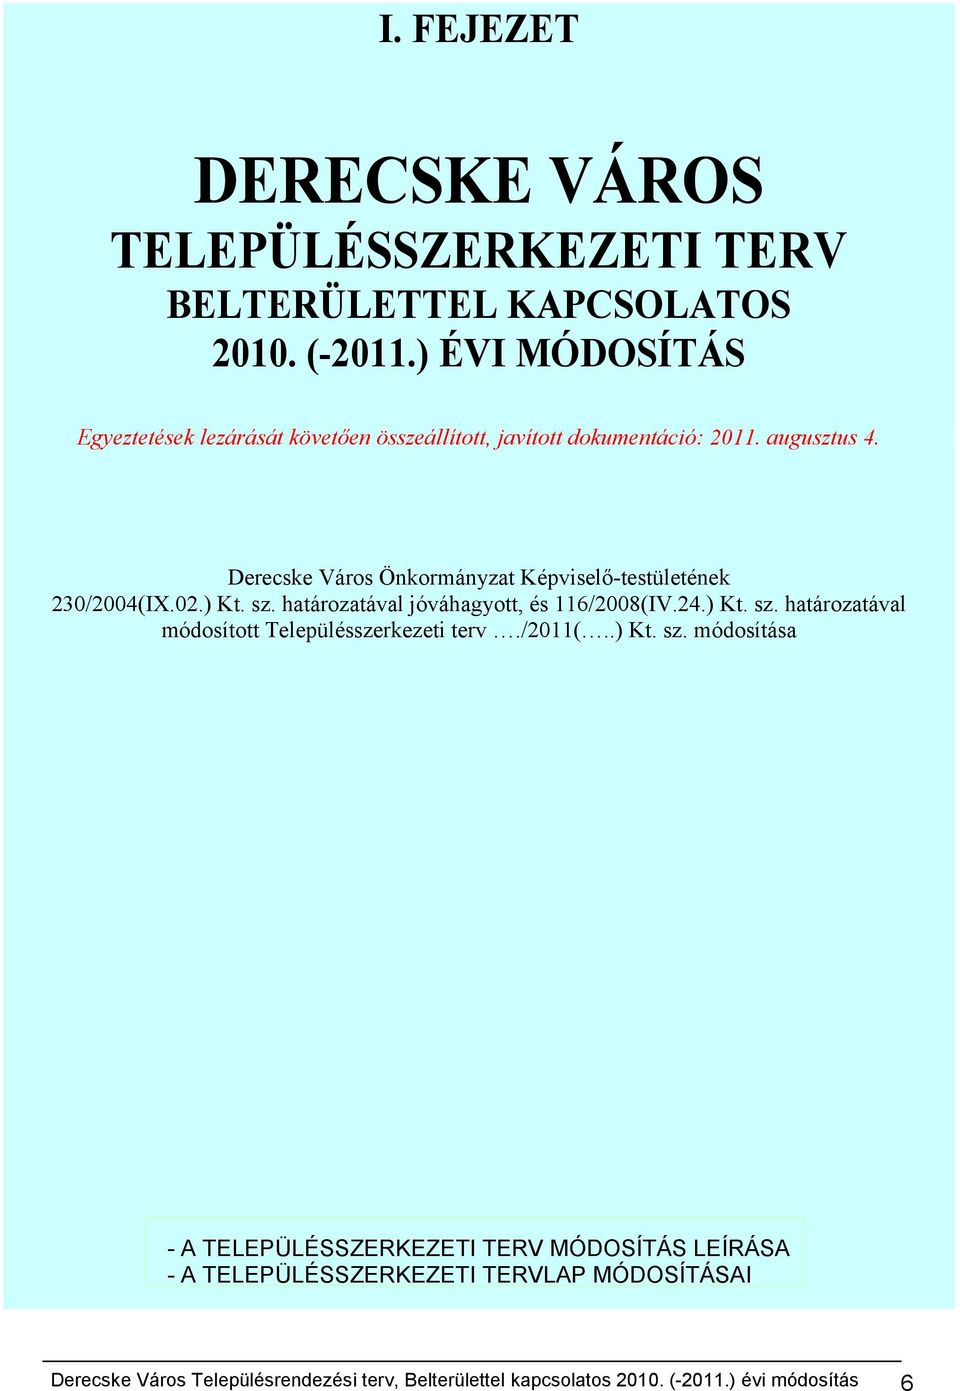 Derecske Város Önkormányzat Képviselő-testületének 0/00(IX.0.) Kt. sz. határozatával jóváhagyott, és /00(IV..) Kt. sz. határozatával módosított Településszerkezeti terv.